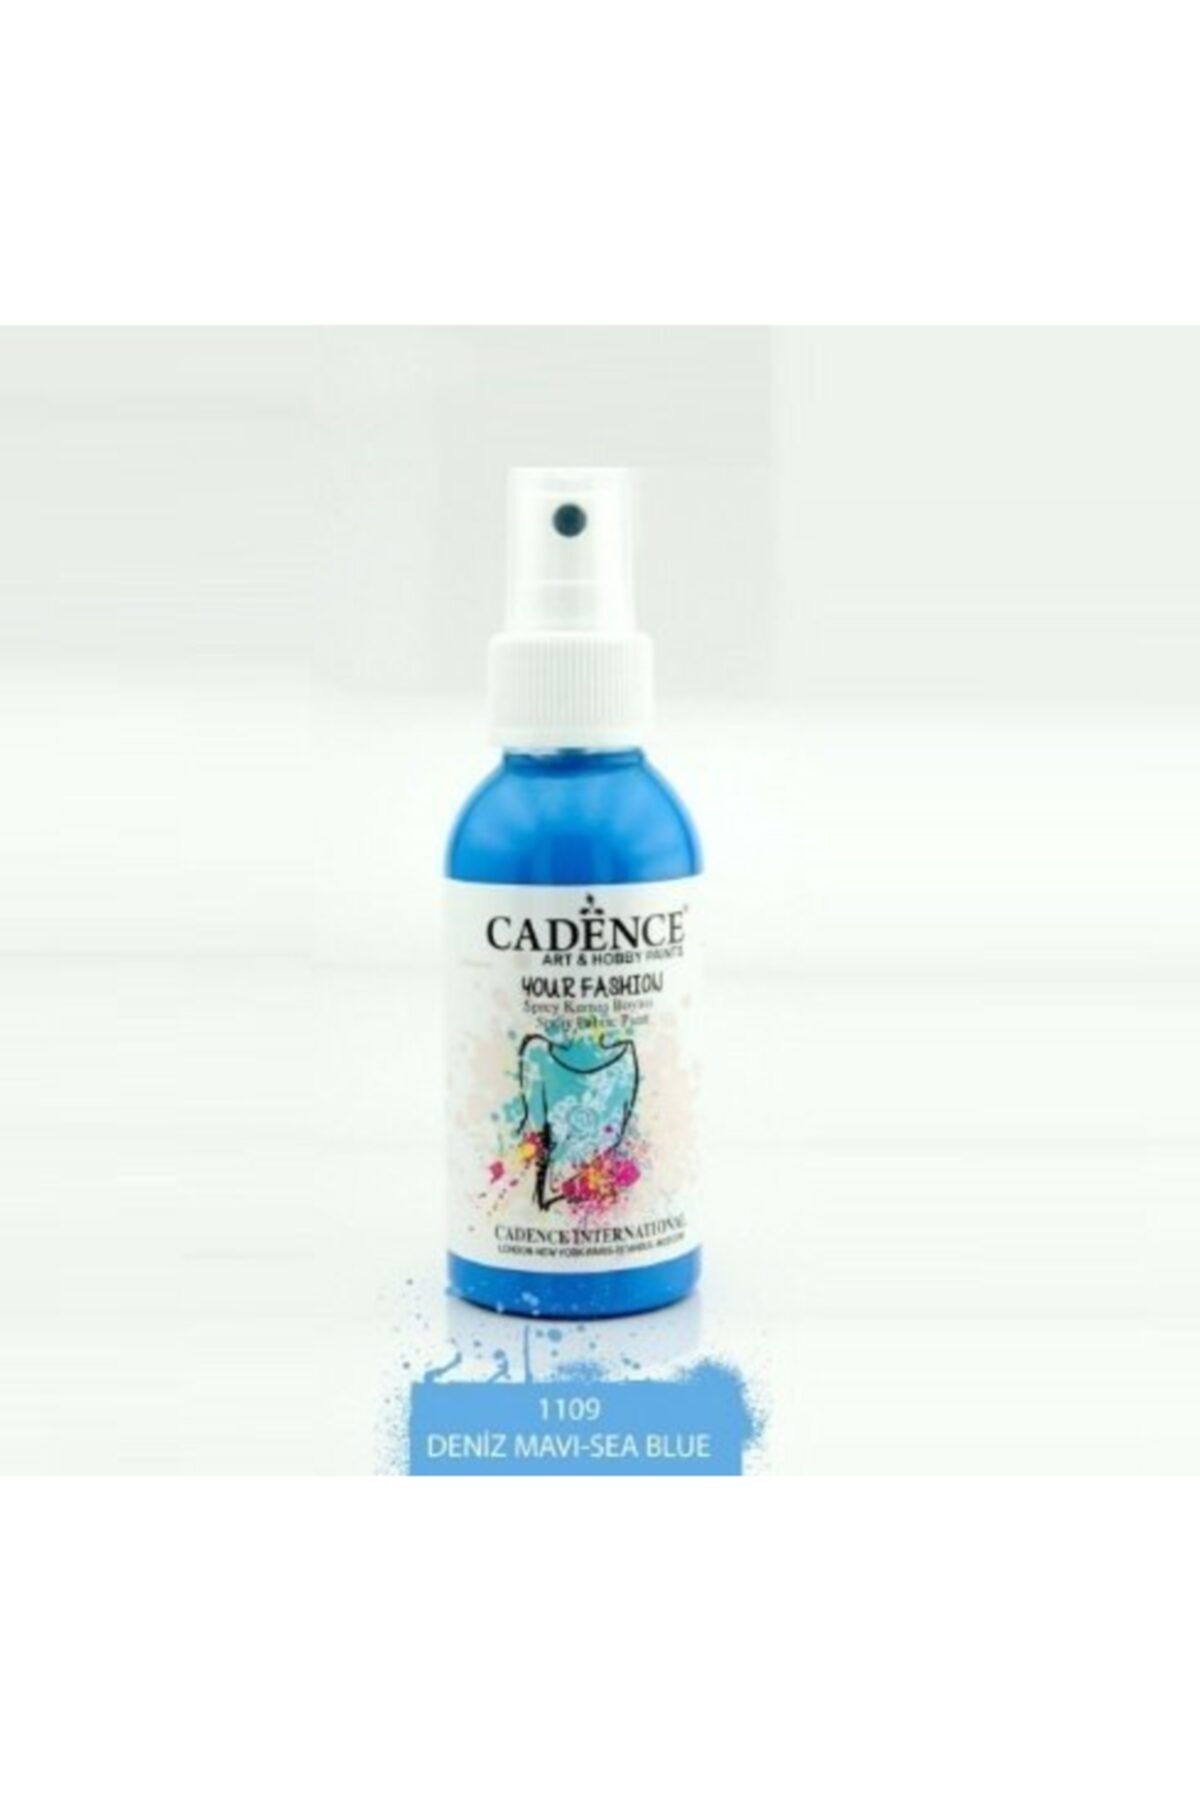 Cadence 1109 Deniz Mavi Sprey Kumaş Boyası | Craft Hobi